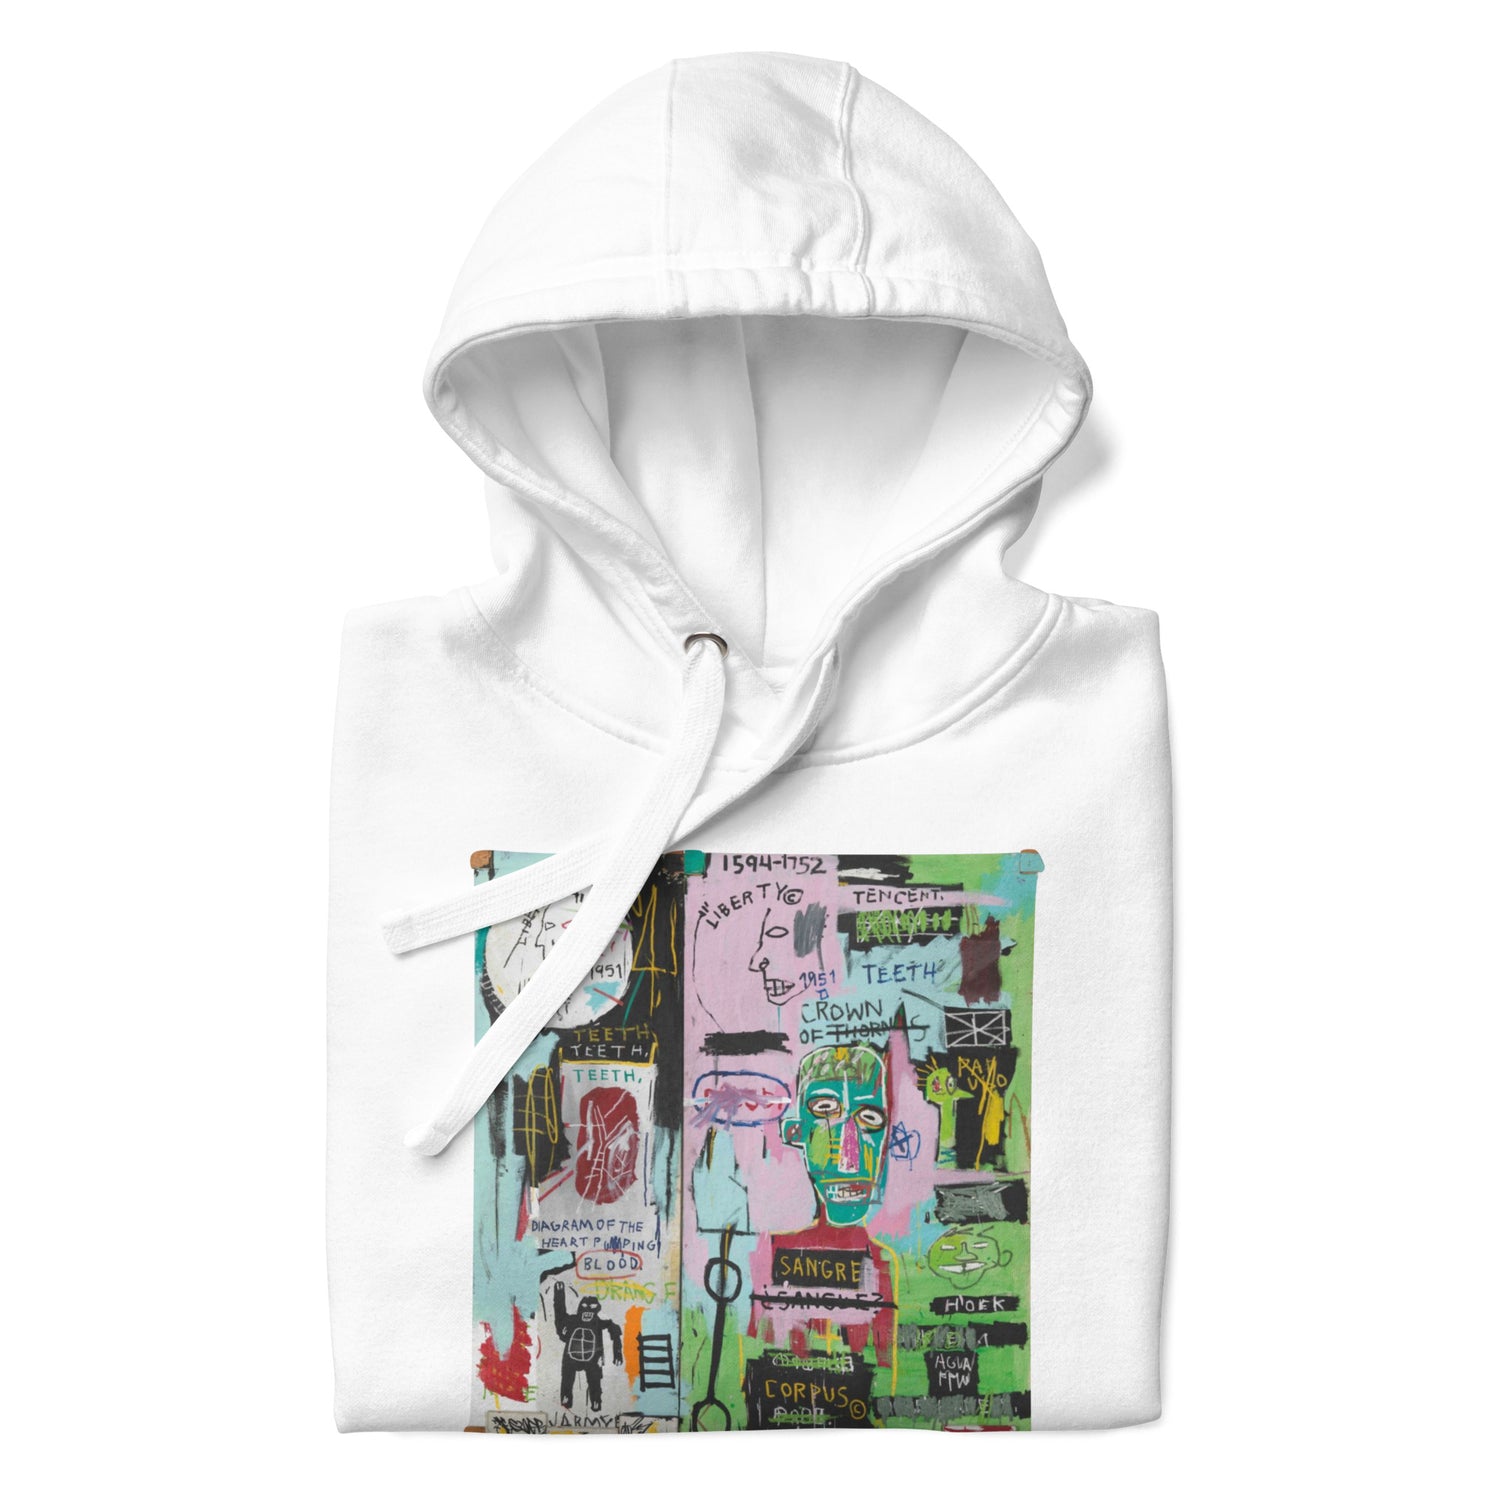 Jean-Michel Basquiat "In Italian" Artwork Printed Premium Streetwear Sweatshirt Hoodie White